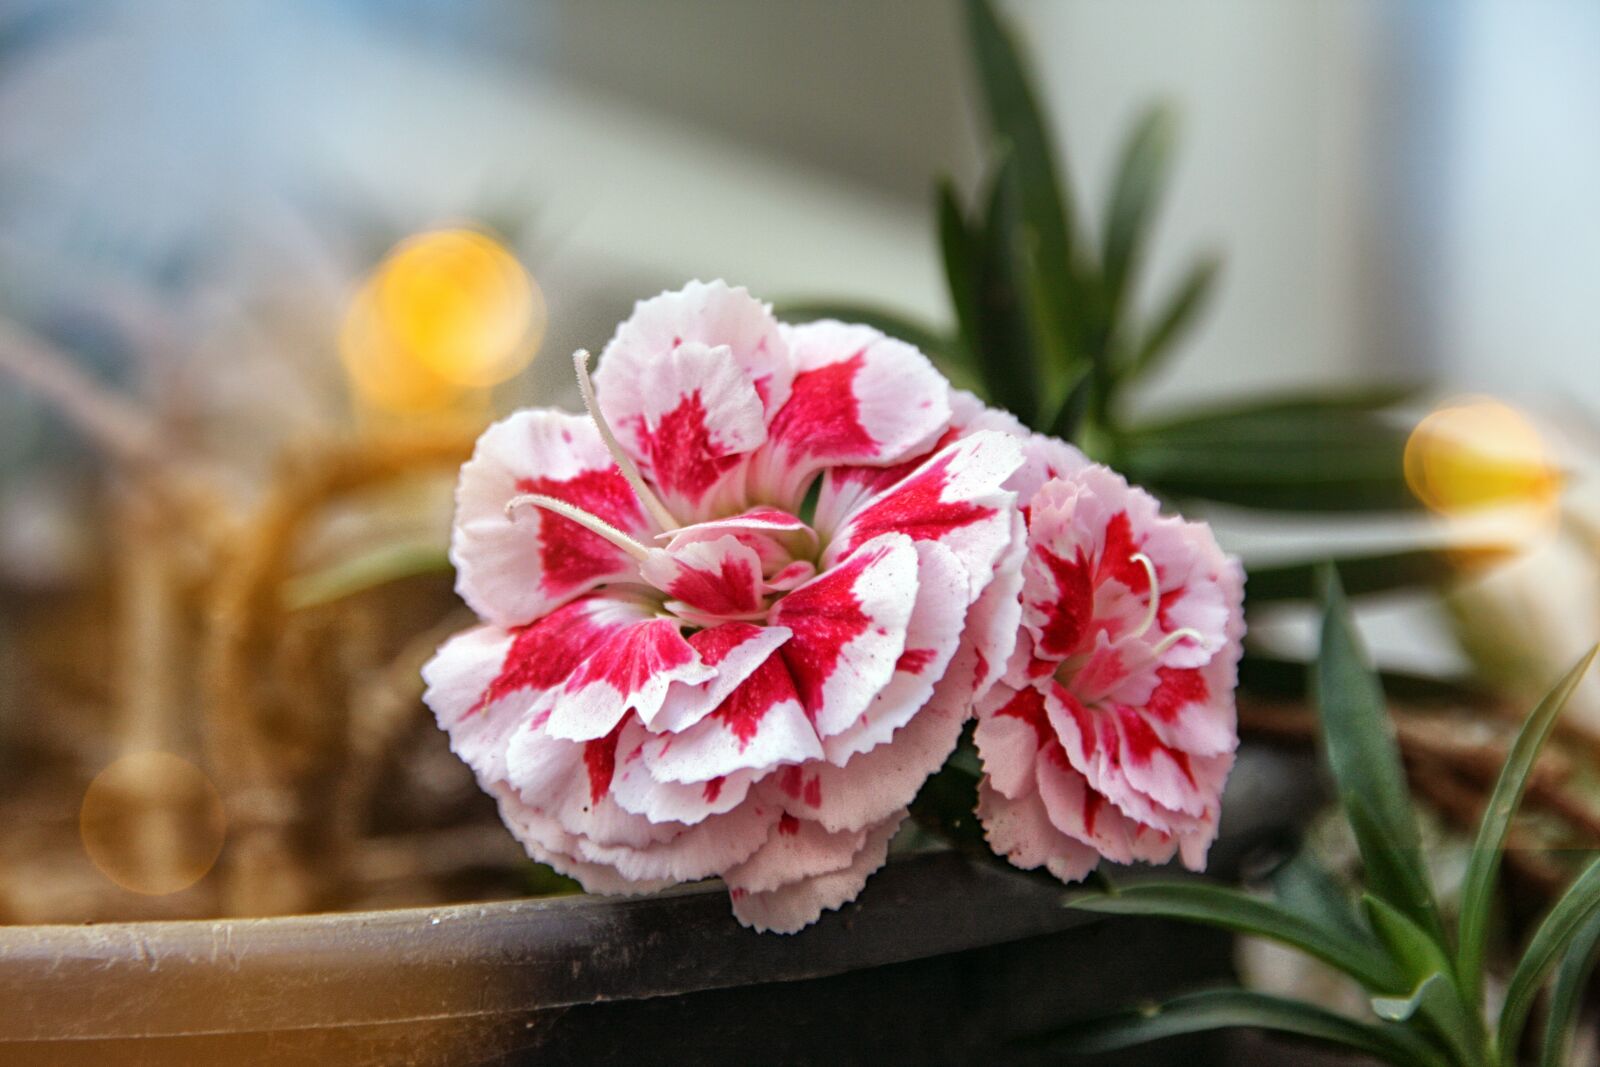 Canon EOS 40D sample photo. Flower, petals, plants photography